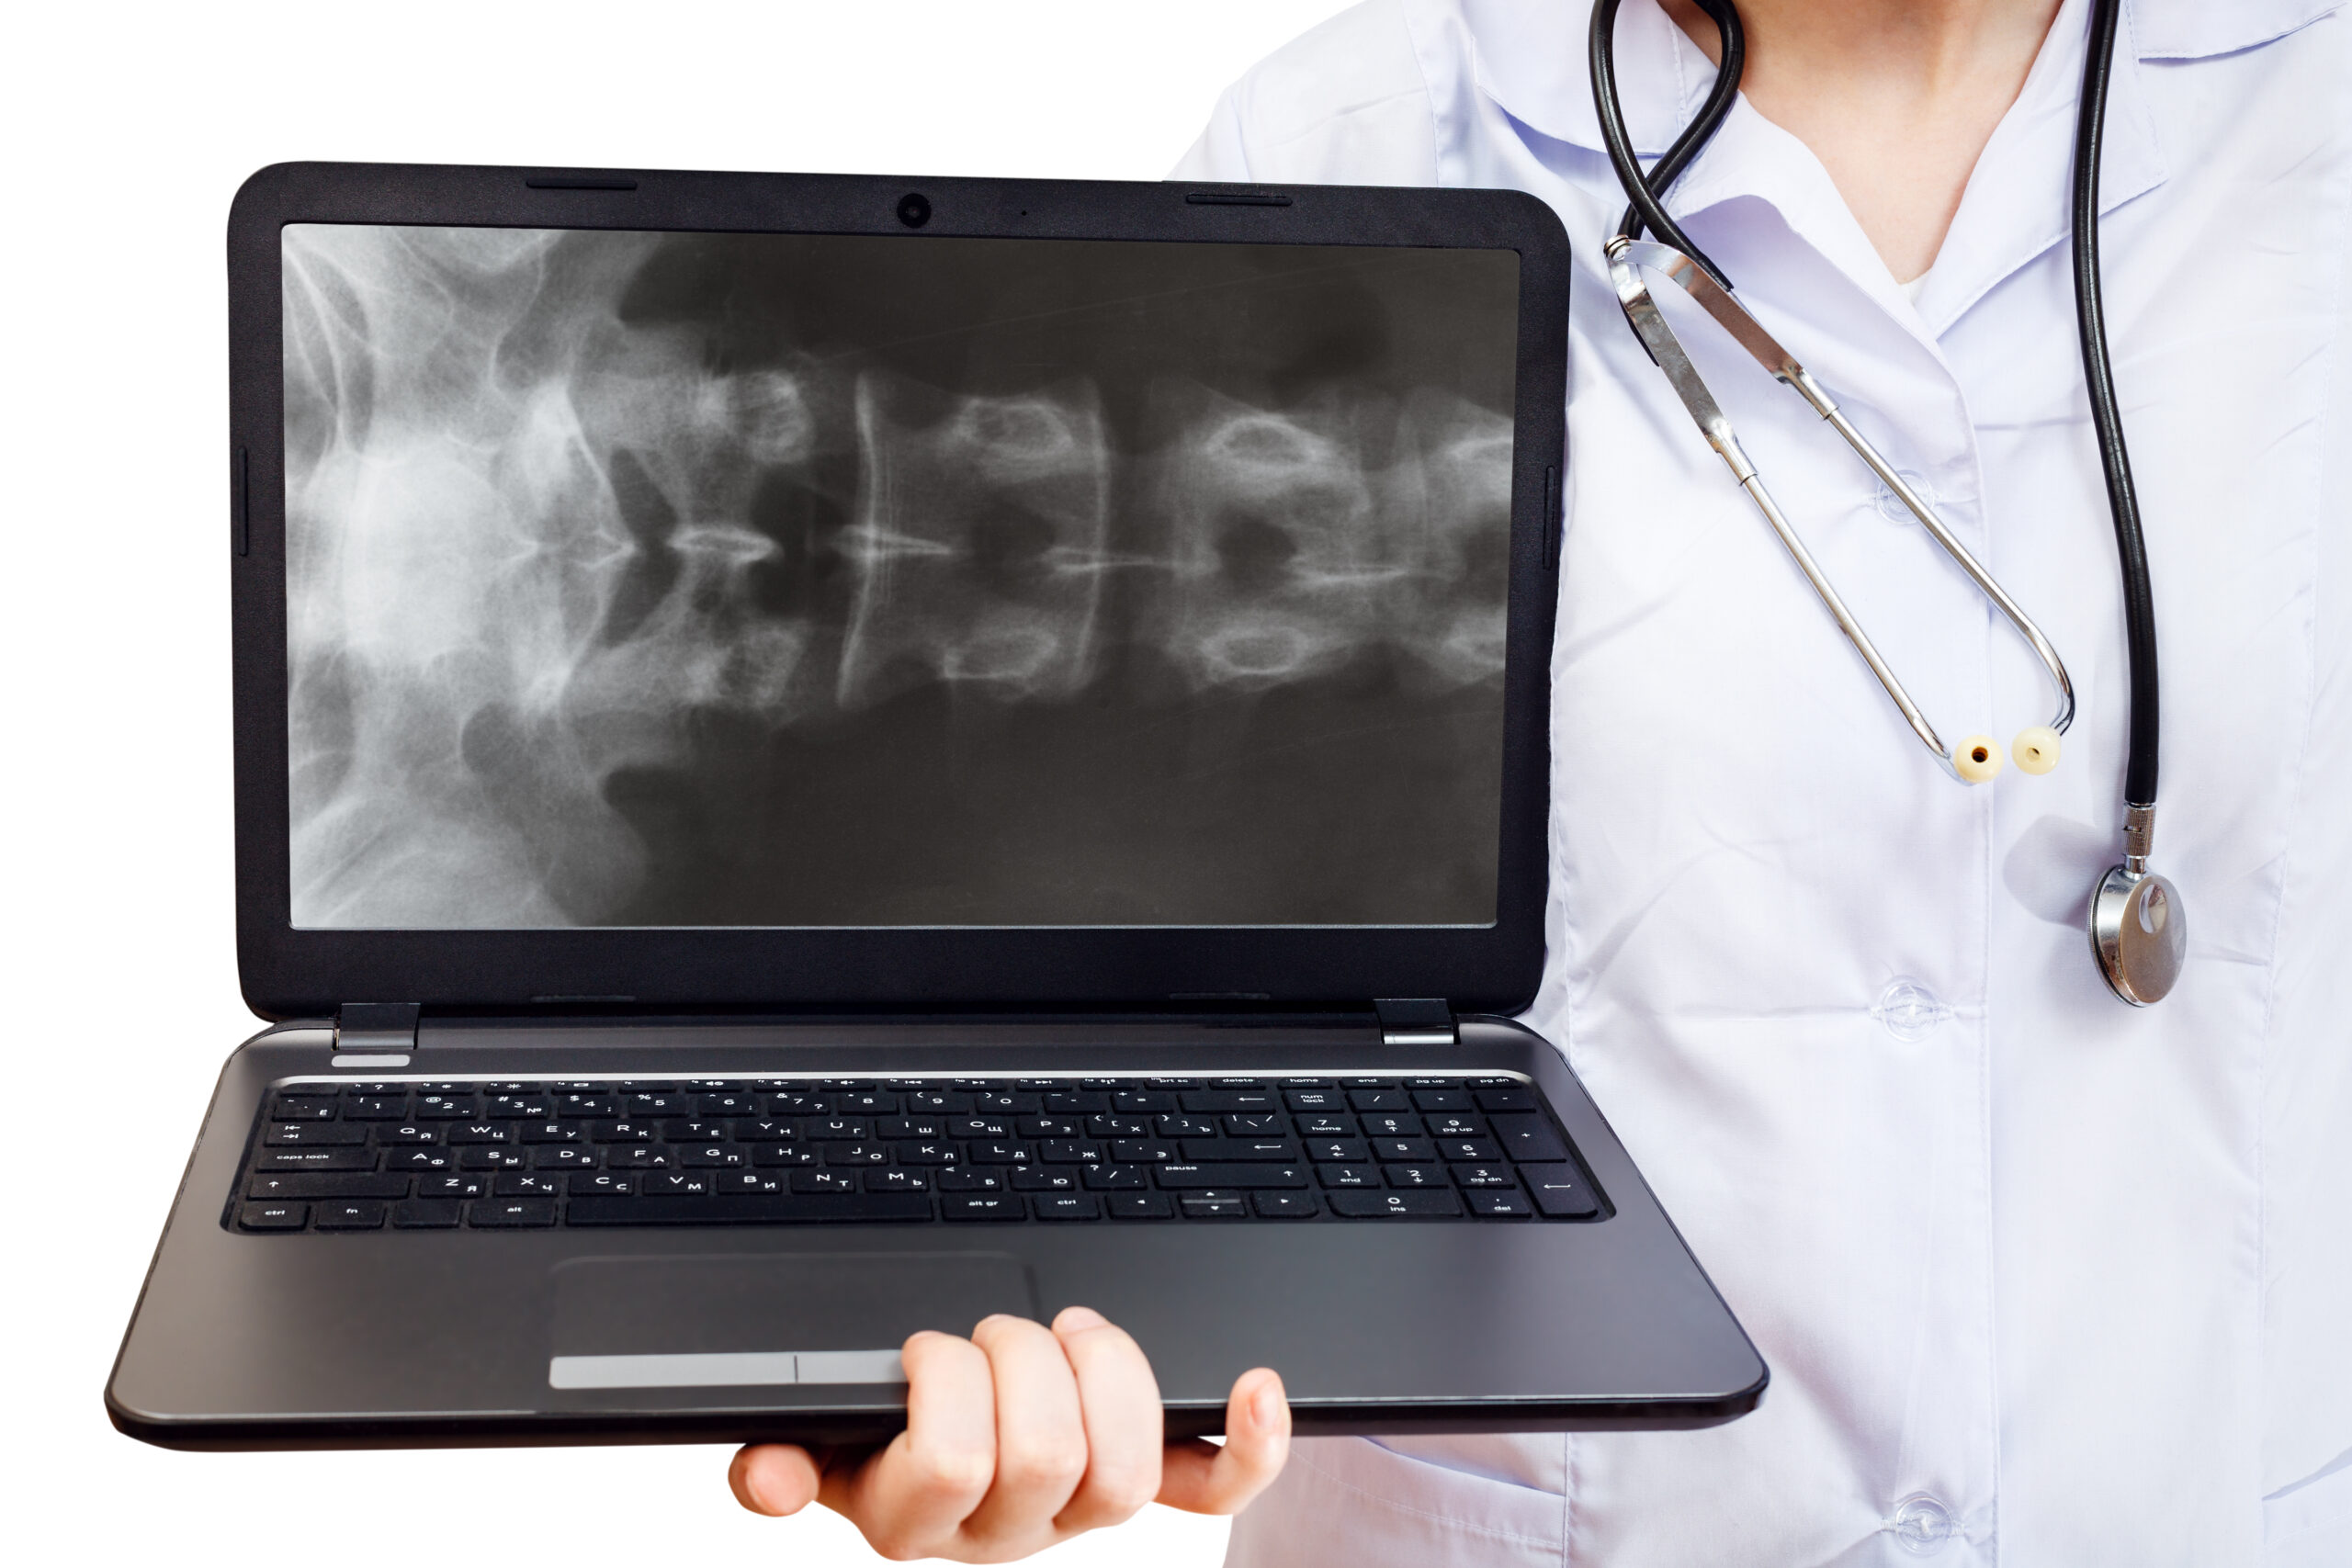 Na zdjęciu widoczne jest zdjęcie rentgenowskie kości, które ukazuje zmiany charakterystyczne dla choroby czarnych kości, zwanej również Alkaptonurią. Zdjęcie to jest prezentowane na ekranie laptopa, co symbolizuje nowoczesne podejście do diagnostyki chorób kości z wykorzystaniem technologii cyfrowych. Dzięki takim narzędziom lekarze mogą dokładniej zdiagnozować choroby kości, takie jak Alkaptonuria, i zaplanować odpowiednie metody leczenia.